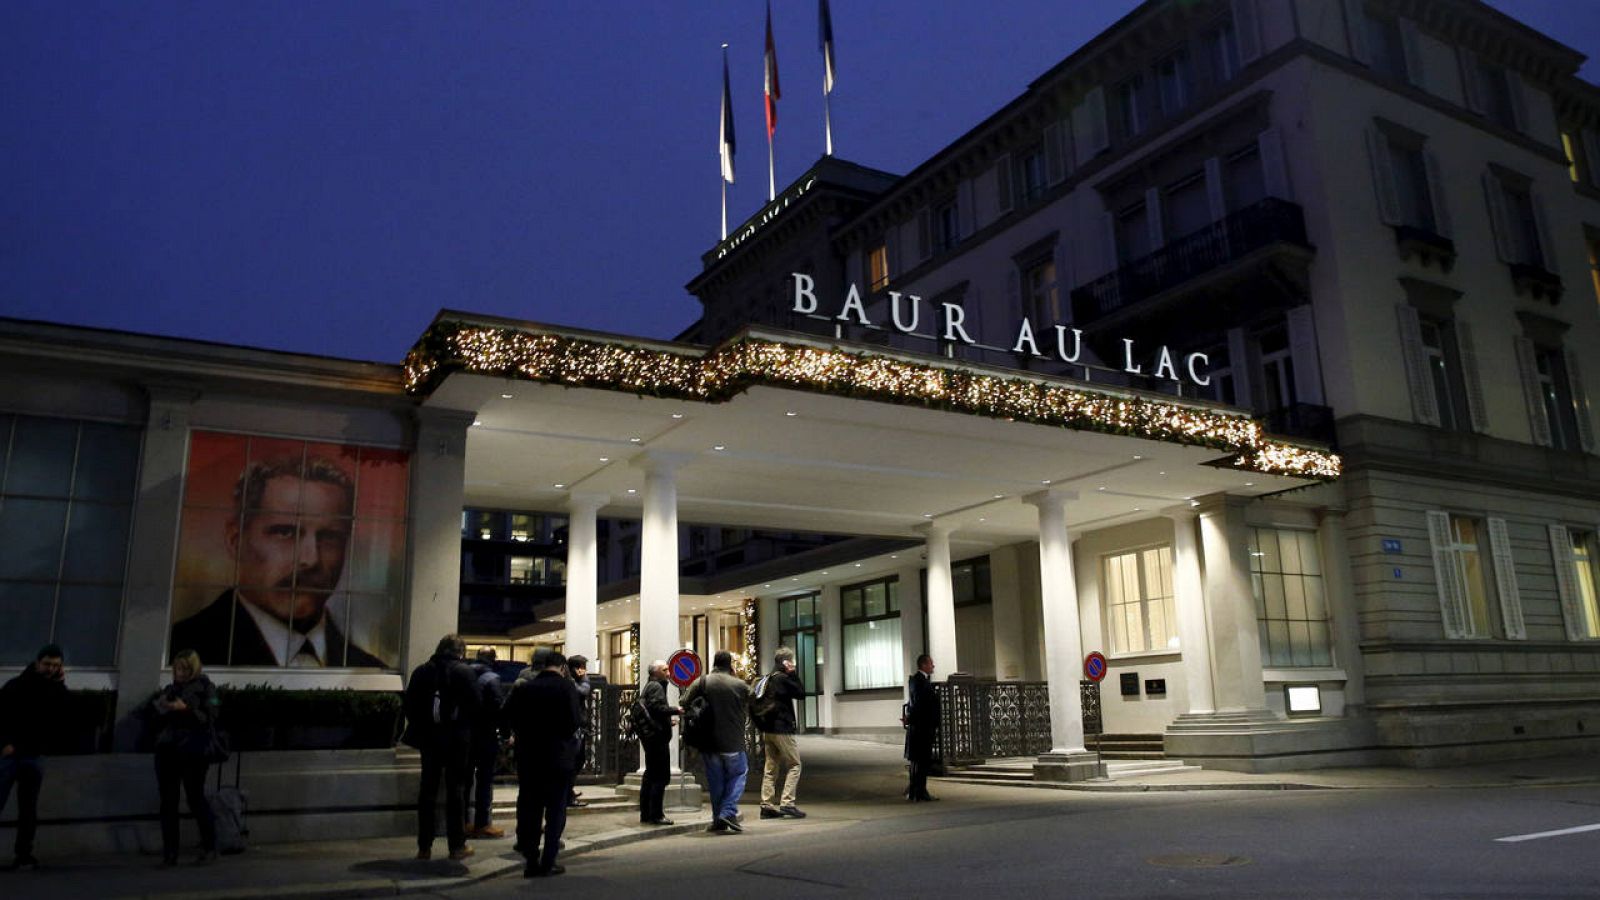 Fachada del hotel Baur au Lac de Zúrich, donde se ha llevado a cabo la operación policial.